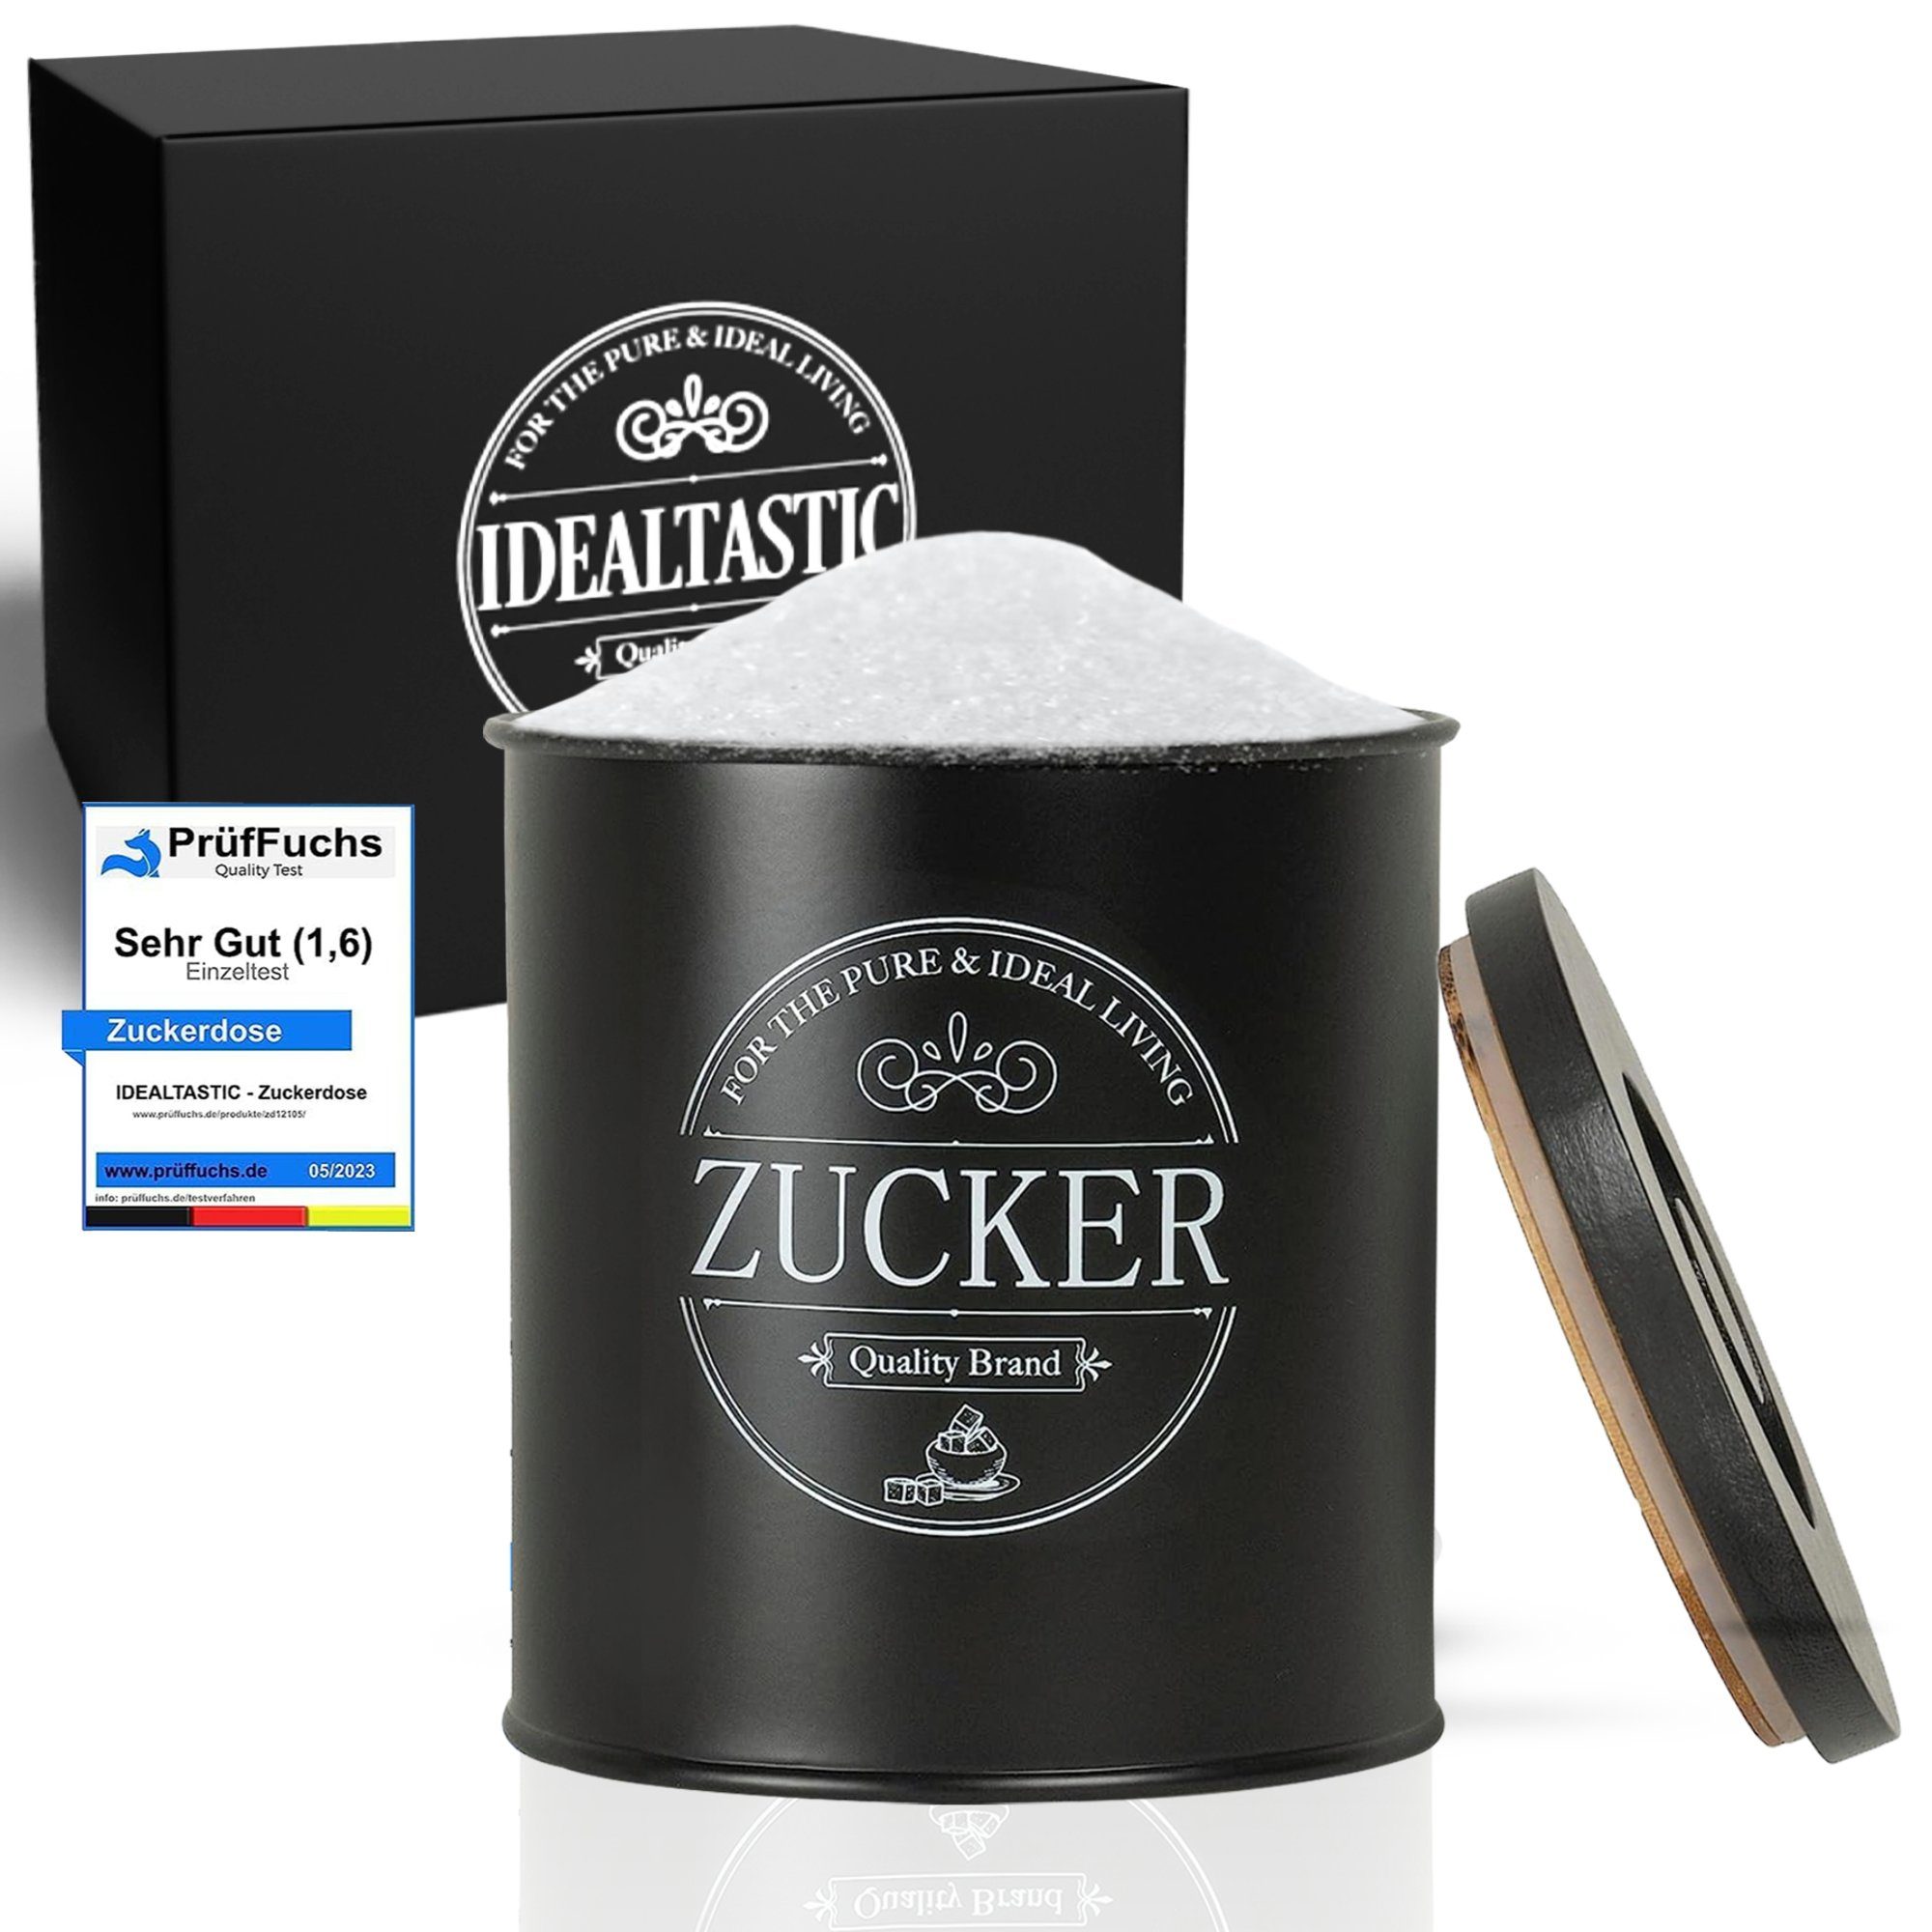 IDEALTASTIC Zuckerdose Premium schwarz 500g mit luftdichtem Verschluss Klumpen freien Zucker, Stahl, Robuster Zucker Behälter mit zeitsparendem Deckel Lebensmittelgeprüft